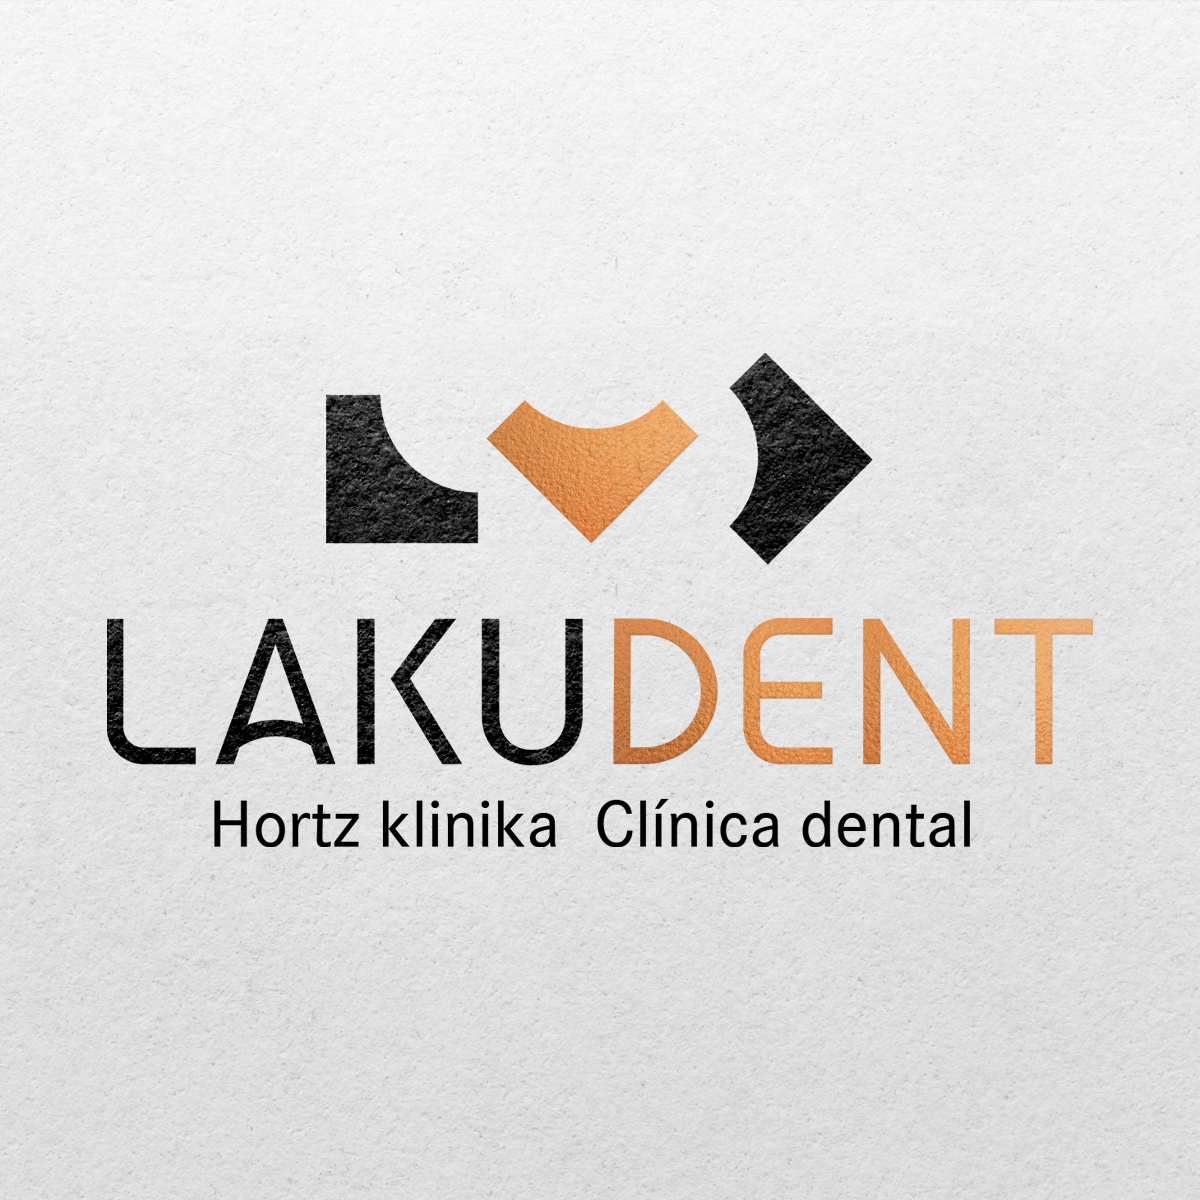 Clínica Dental Lakudent, identidad de marca